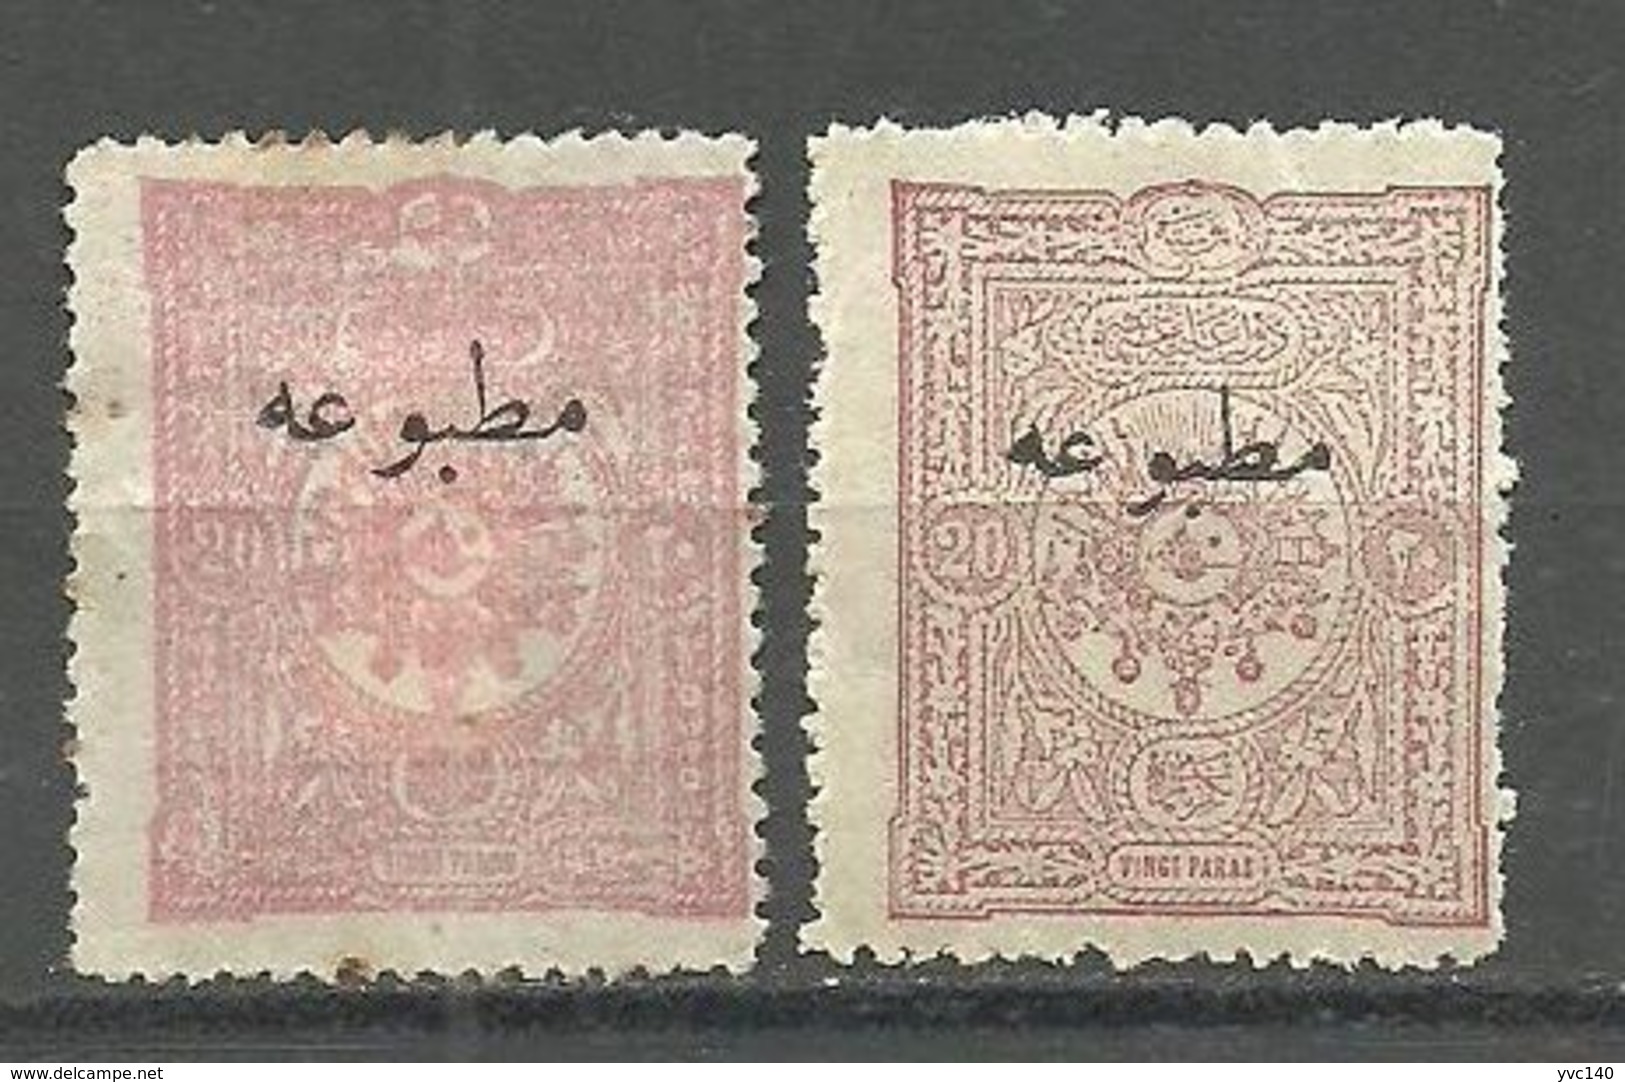 Turkey; 1893 Overprinted Stamp For Printed Matter 20 P.(Rose) RRR - Ongebruikt